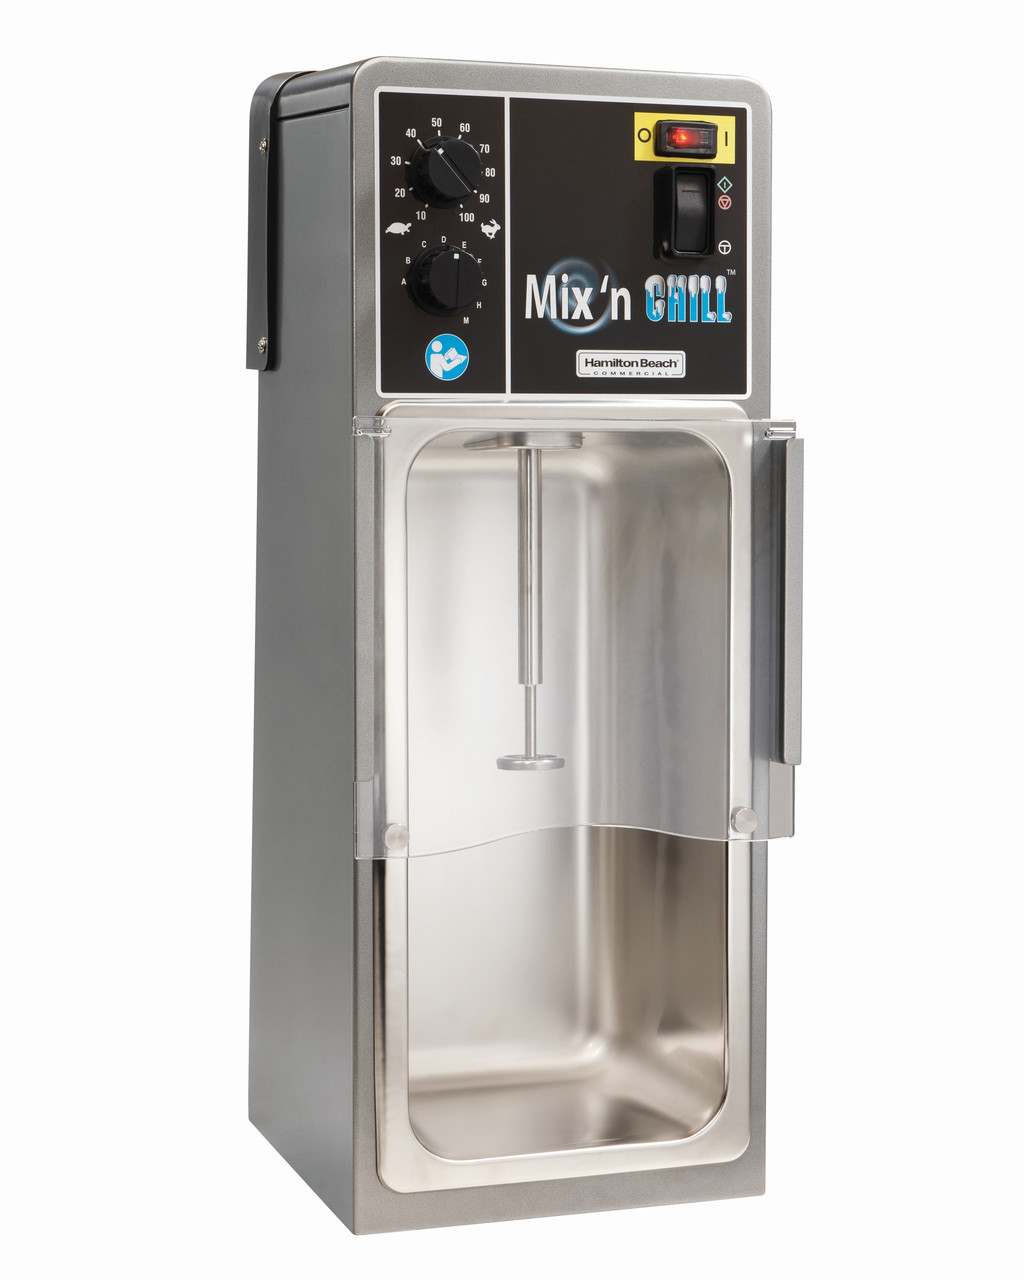 Миксер для напитков модель HMD900-CE / -UK
Mix 'n Chill HamiltonBeath, USA